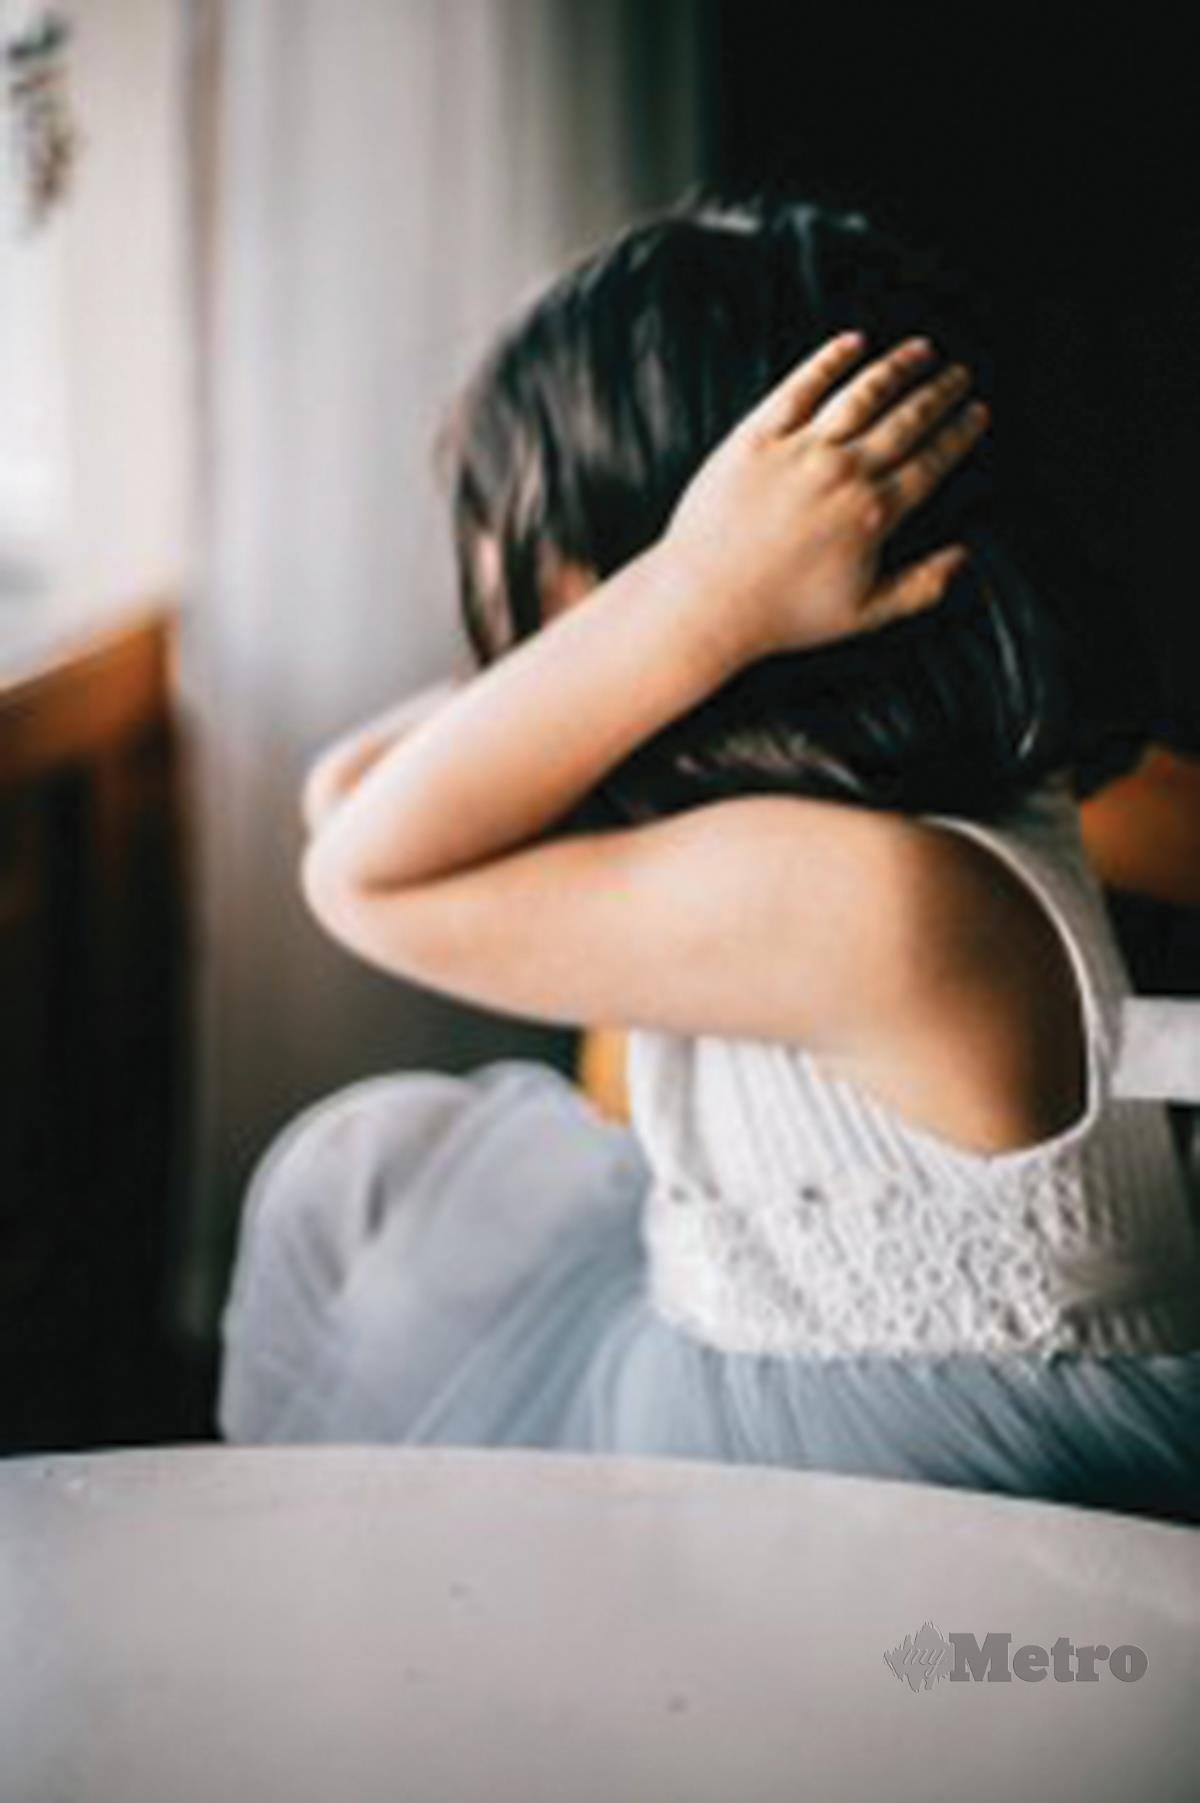 ANAK, cucu dan cicit kepada penghidap PTSD boleh mewarisi trauma.